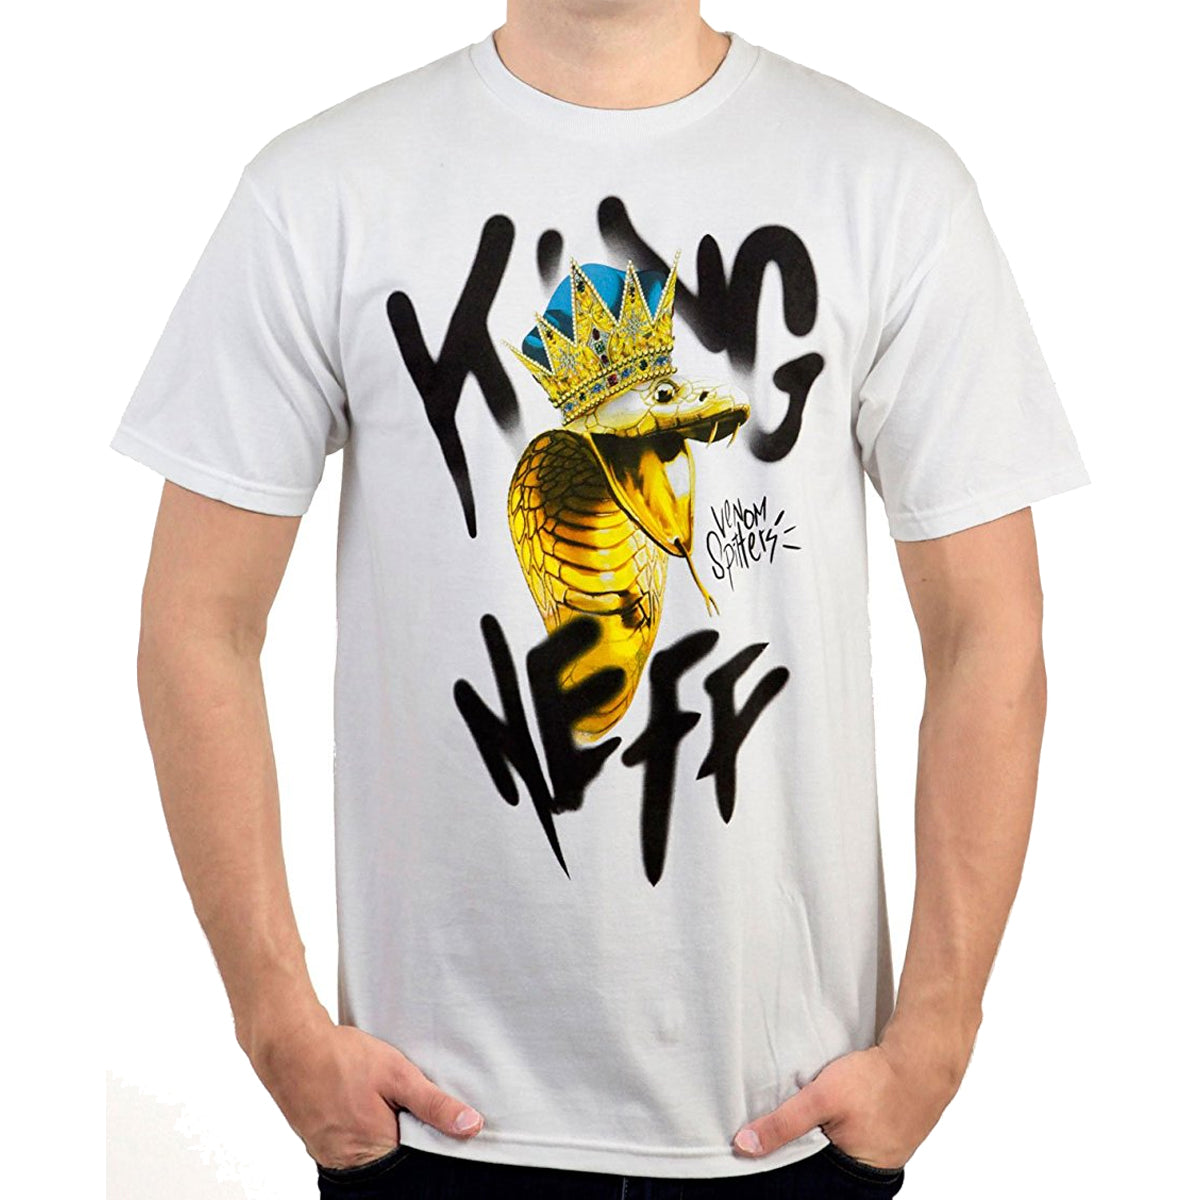 Neff Venom Men's Short-Sleeve Shirts - White